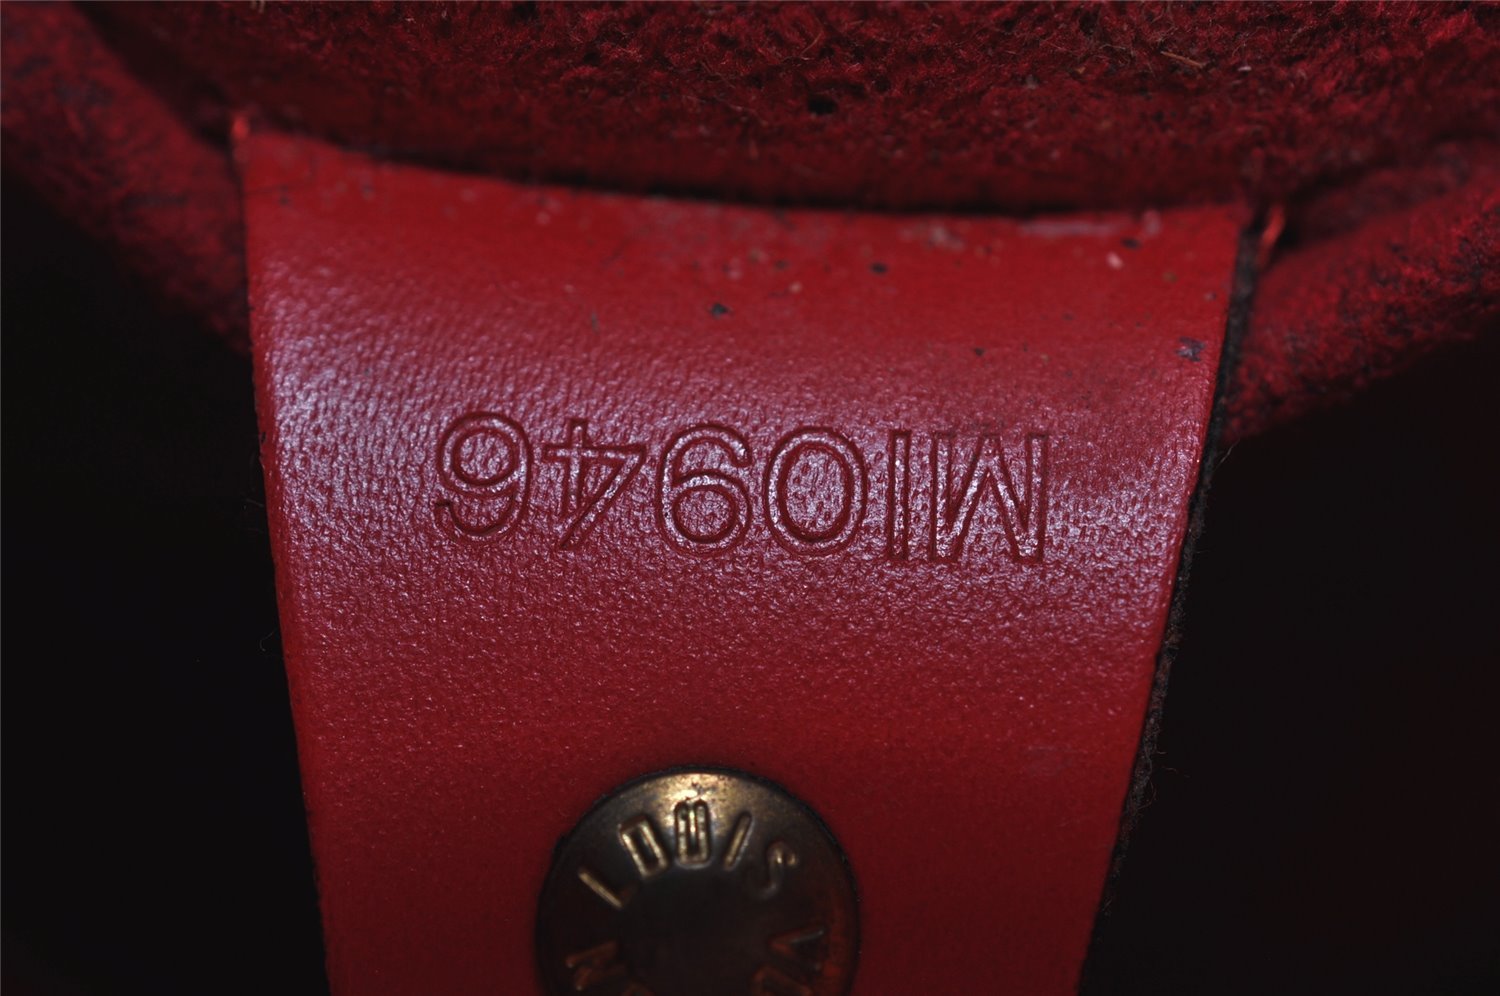 Authentic Louis Vuitton Epi Soufflot Hand Bag Red M52227 LV 9916J